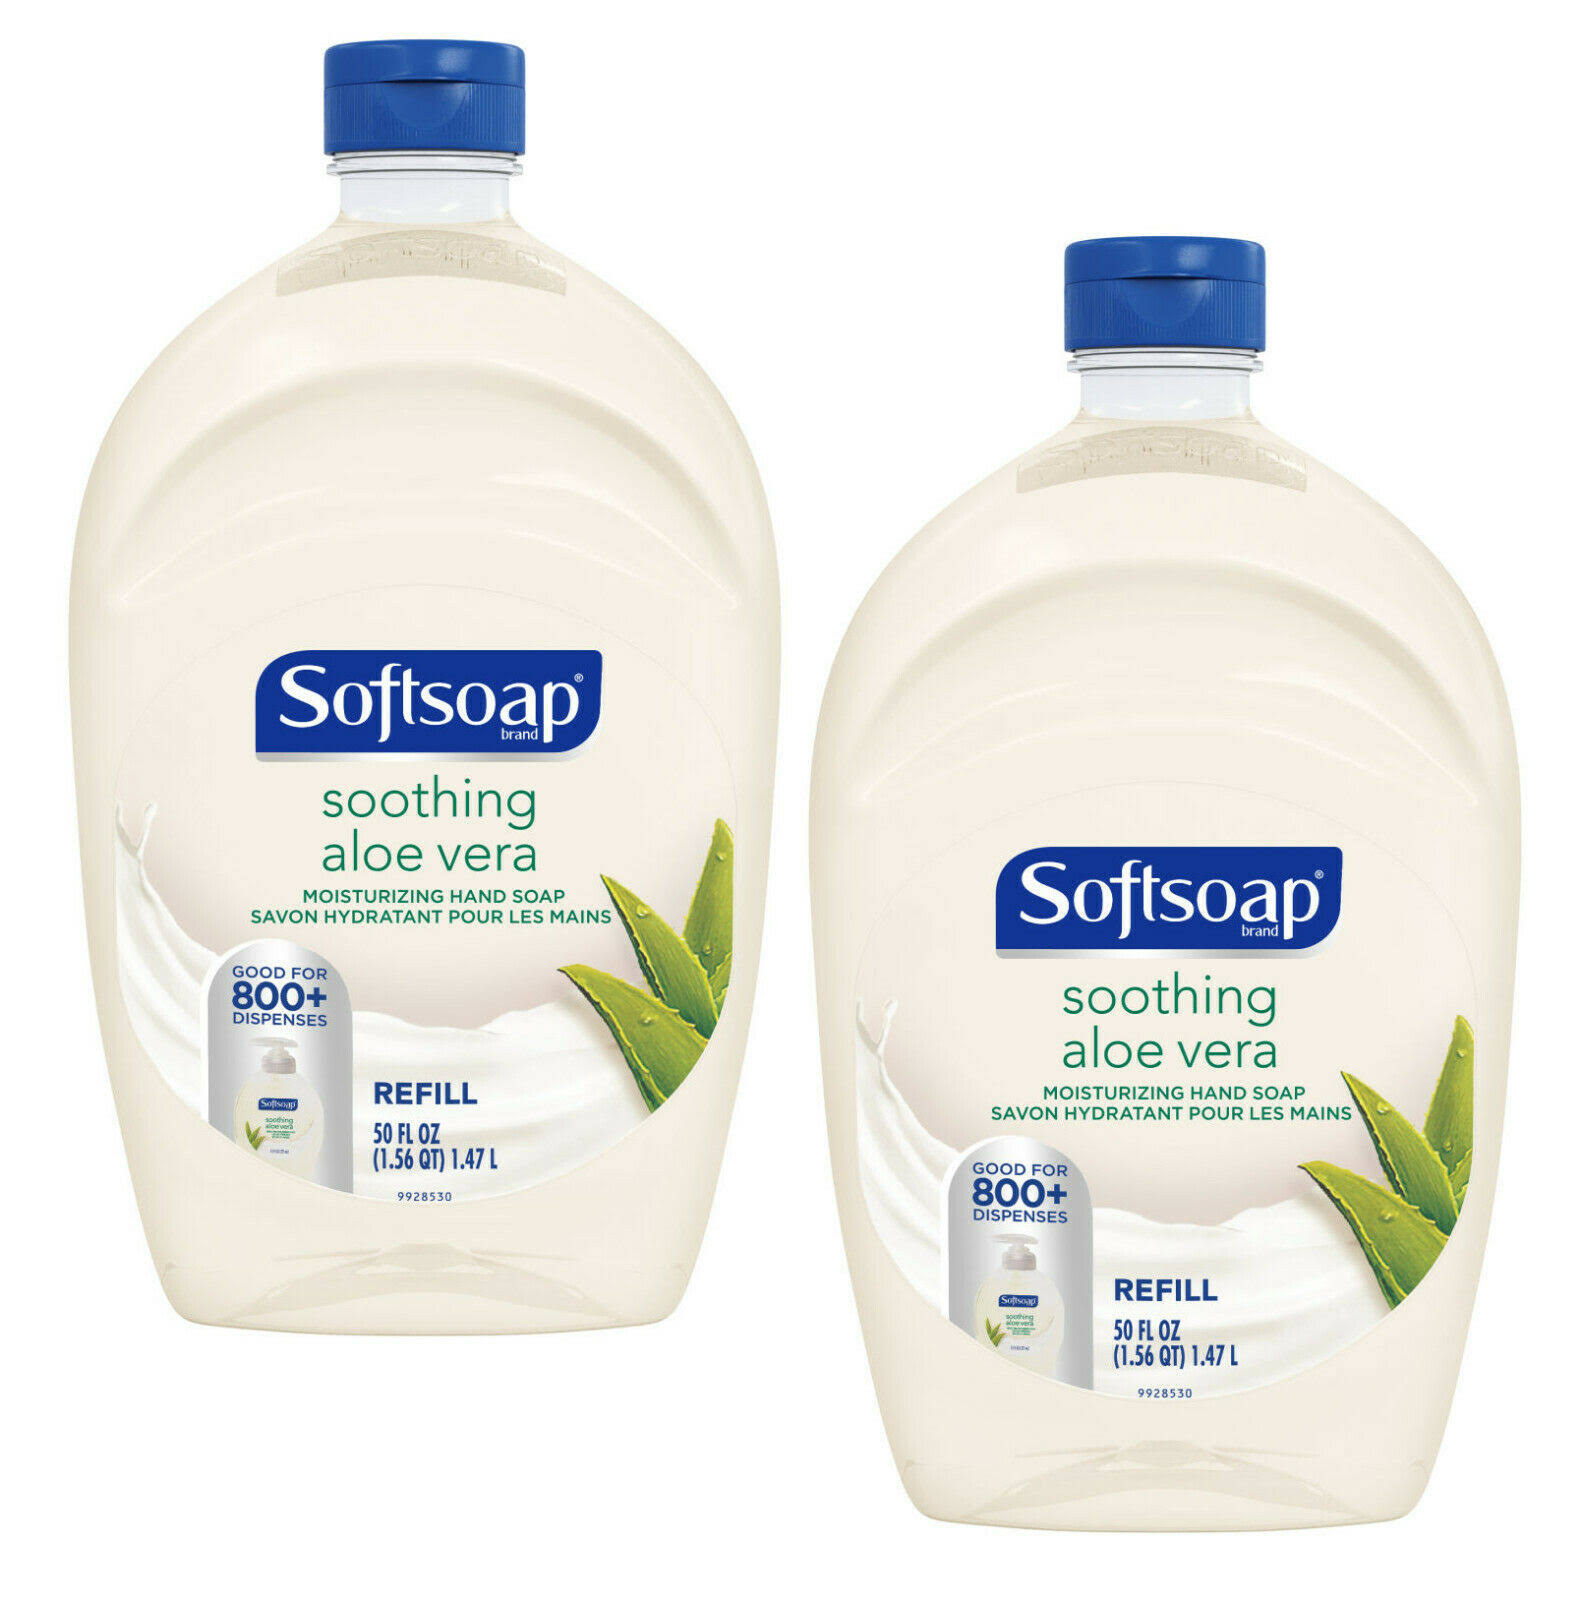 Softsoap Aloe Vera Scent Liquid Hand Soap Refill 50 OZ.